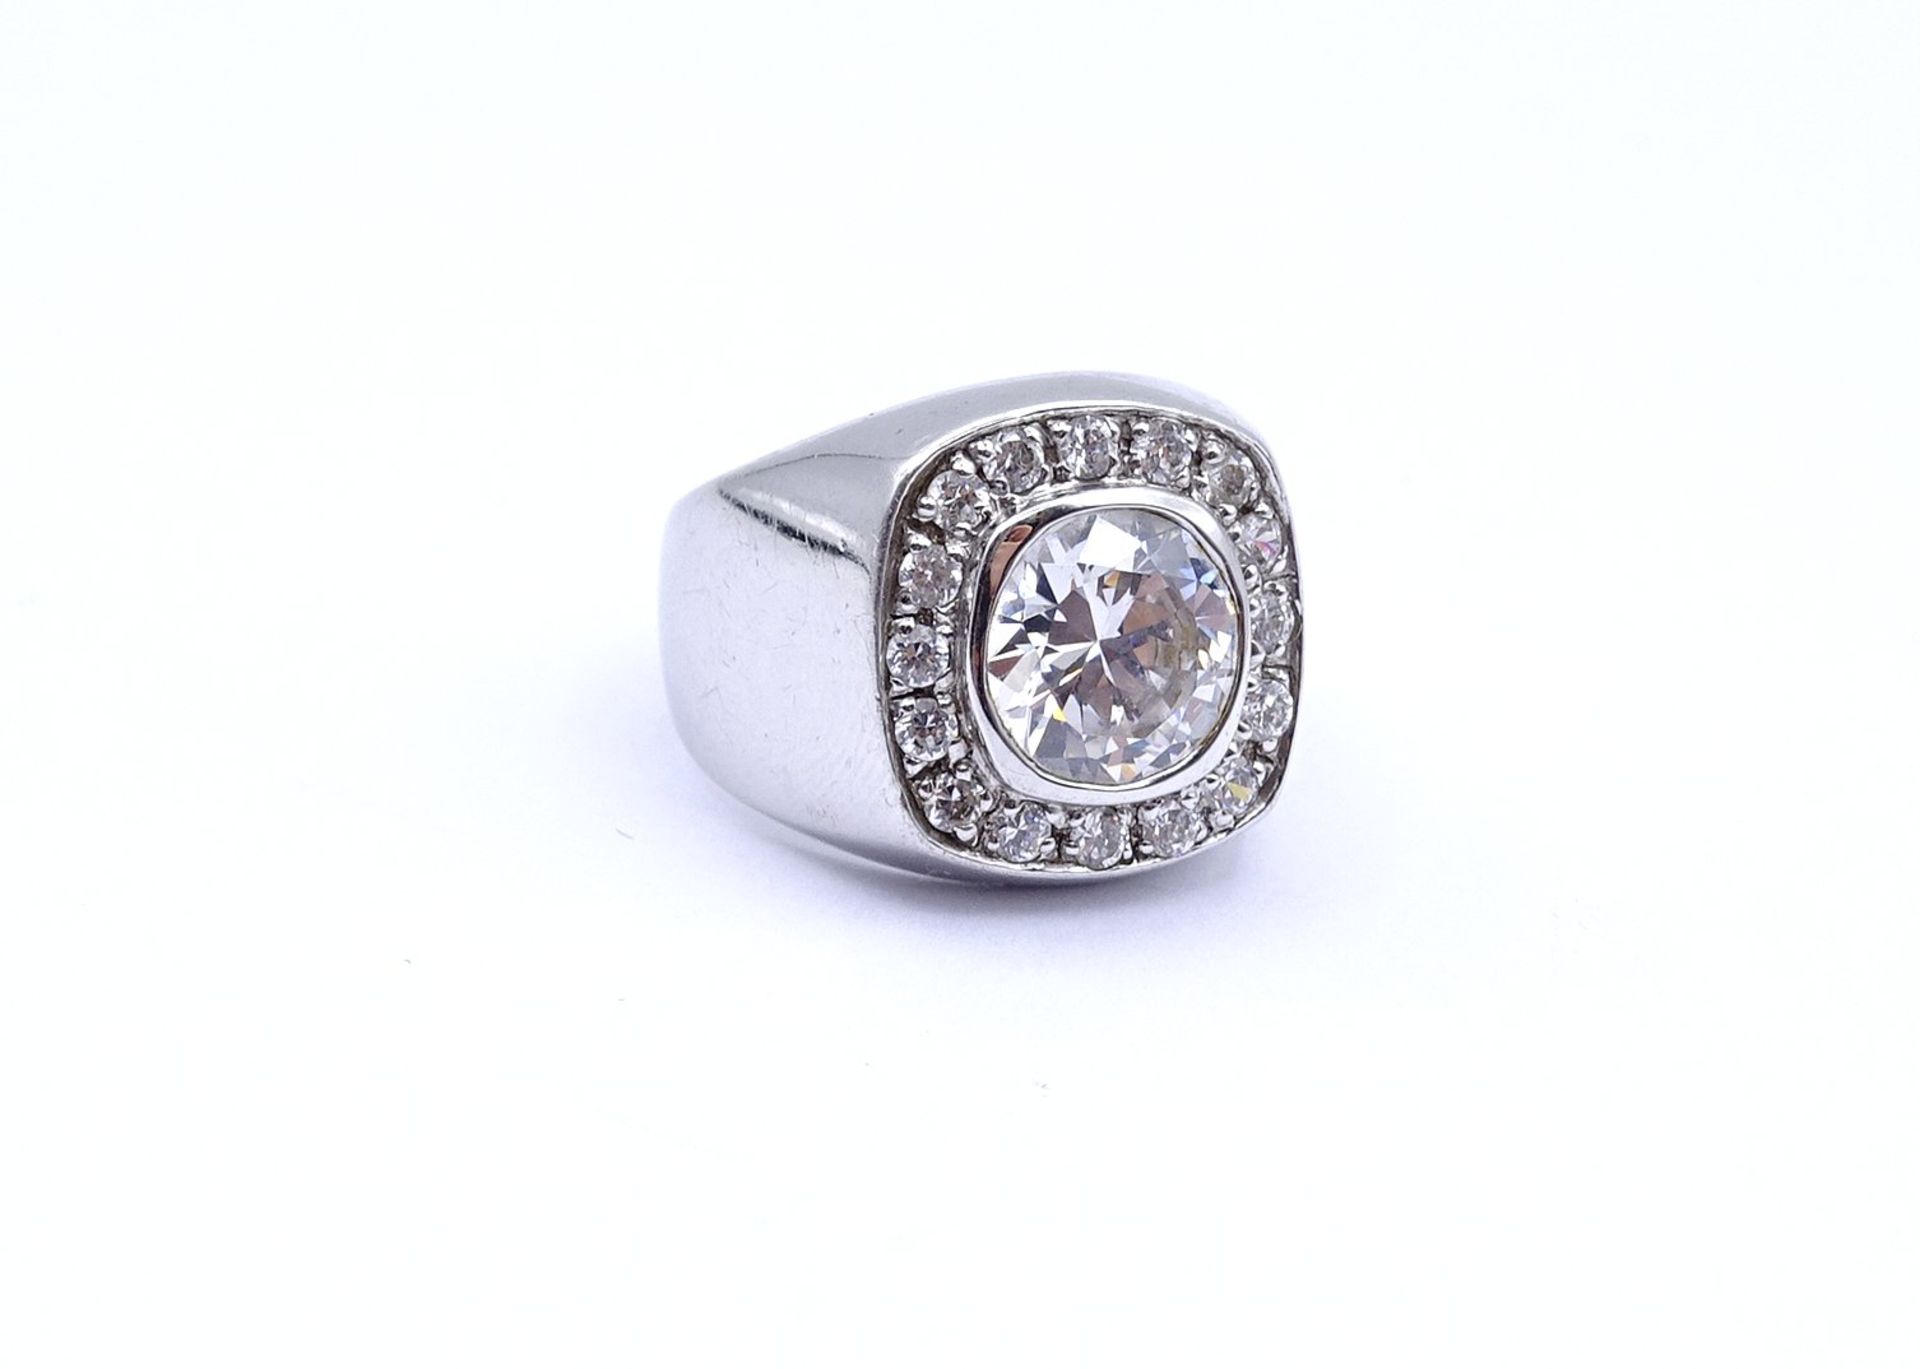 925er Silber Ring mit rund facc. klaren Steinen, 8,3g., RG 57